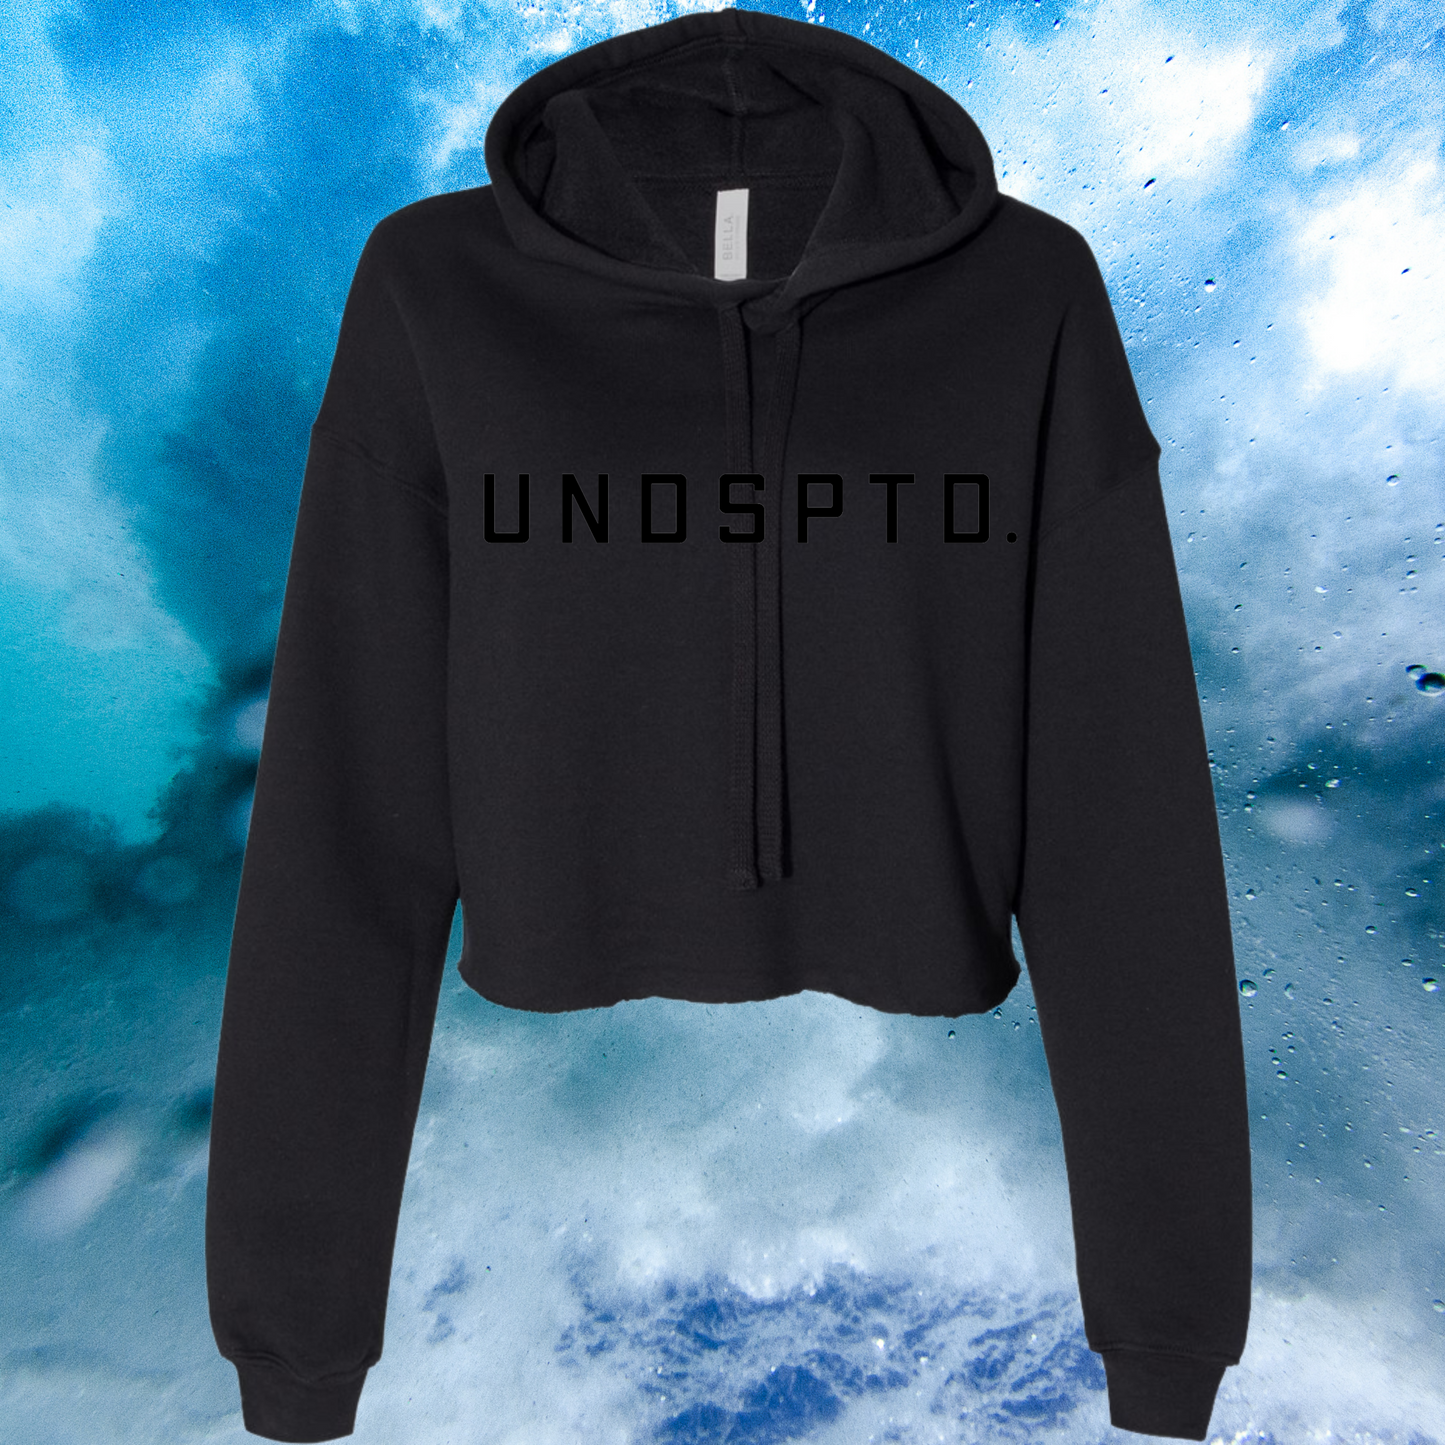 UNDSPTD. Crop Hood - Black